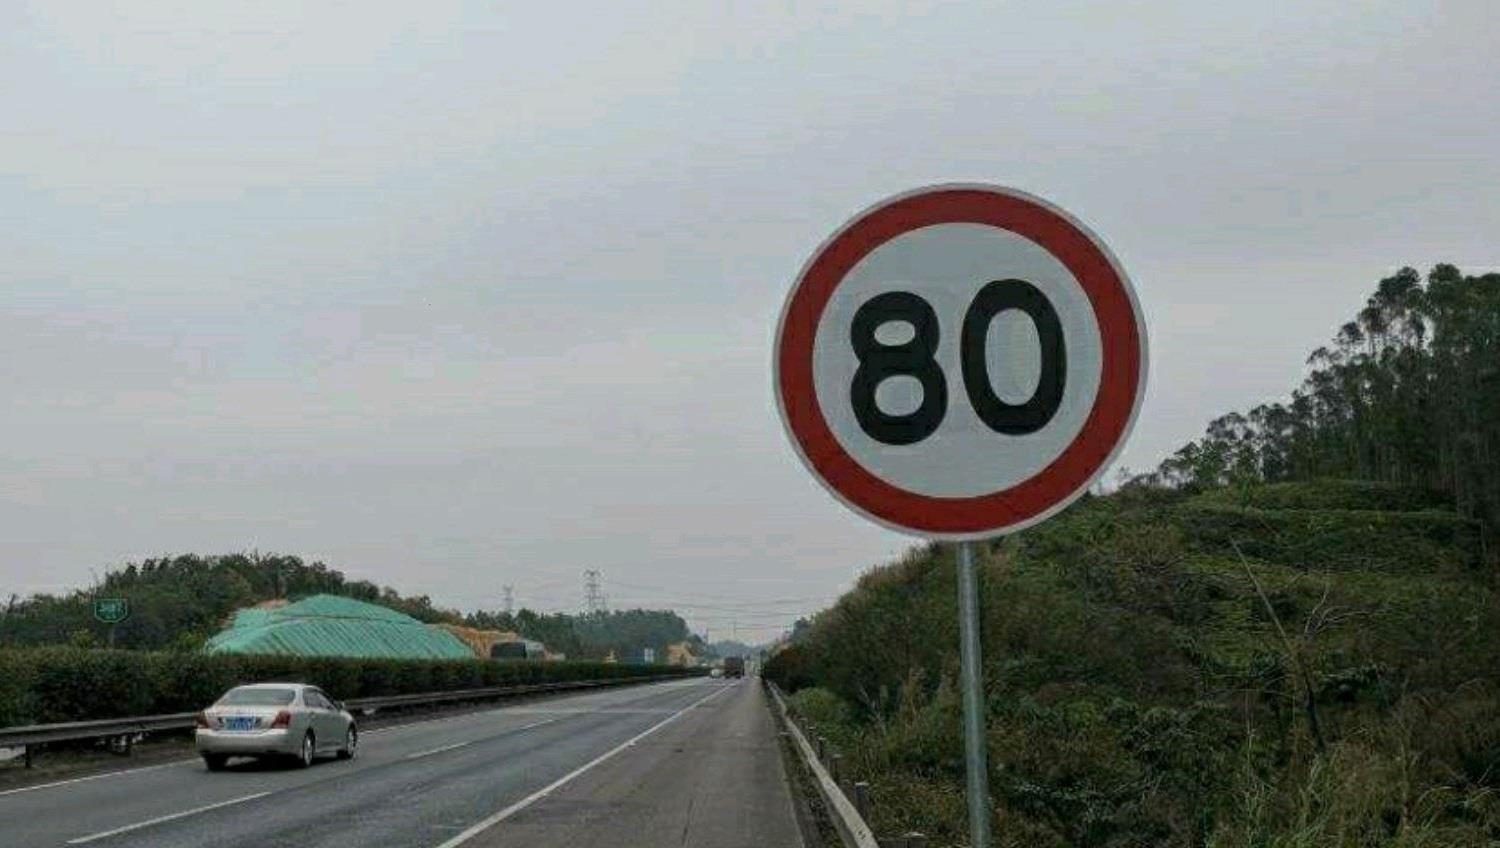 若高速限速80,开到89算超速吗?交警:听好,记不住等着扣分吧!